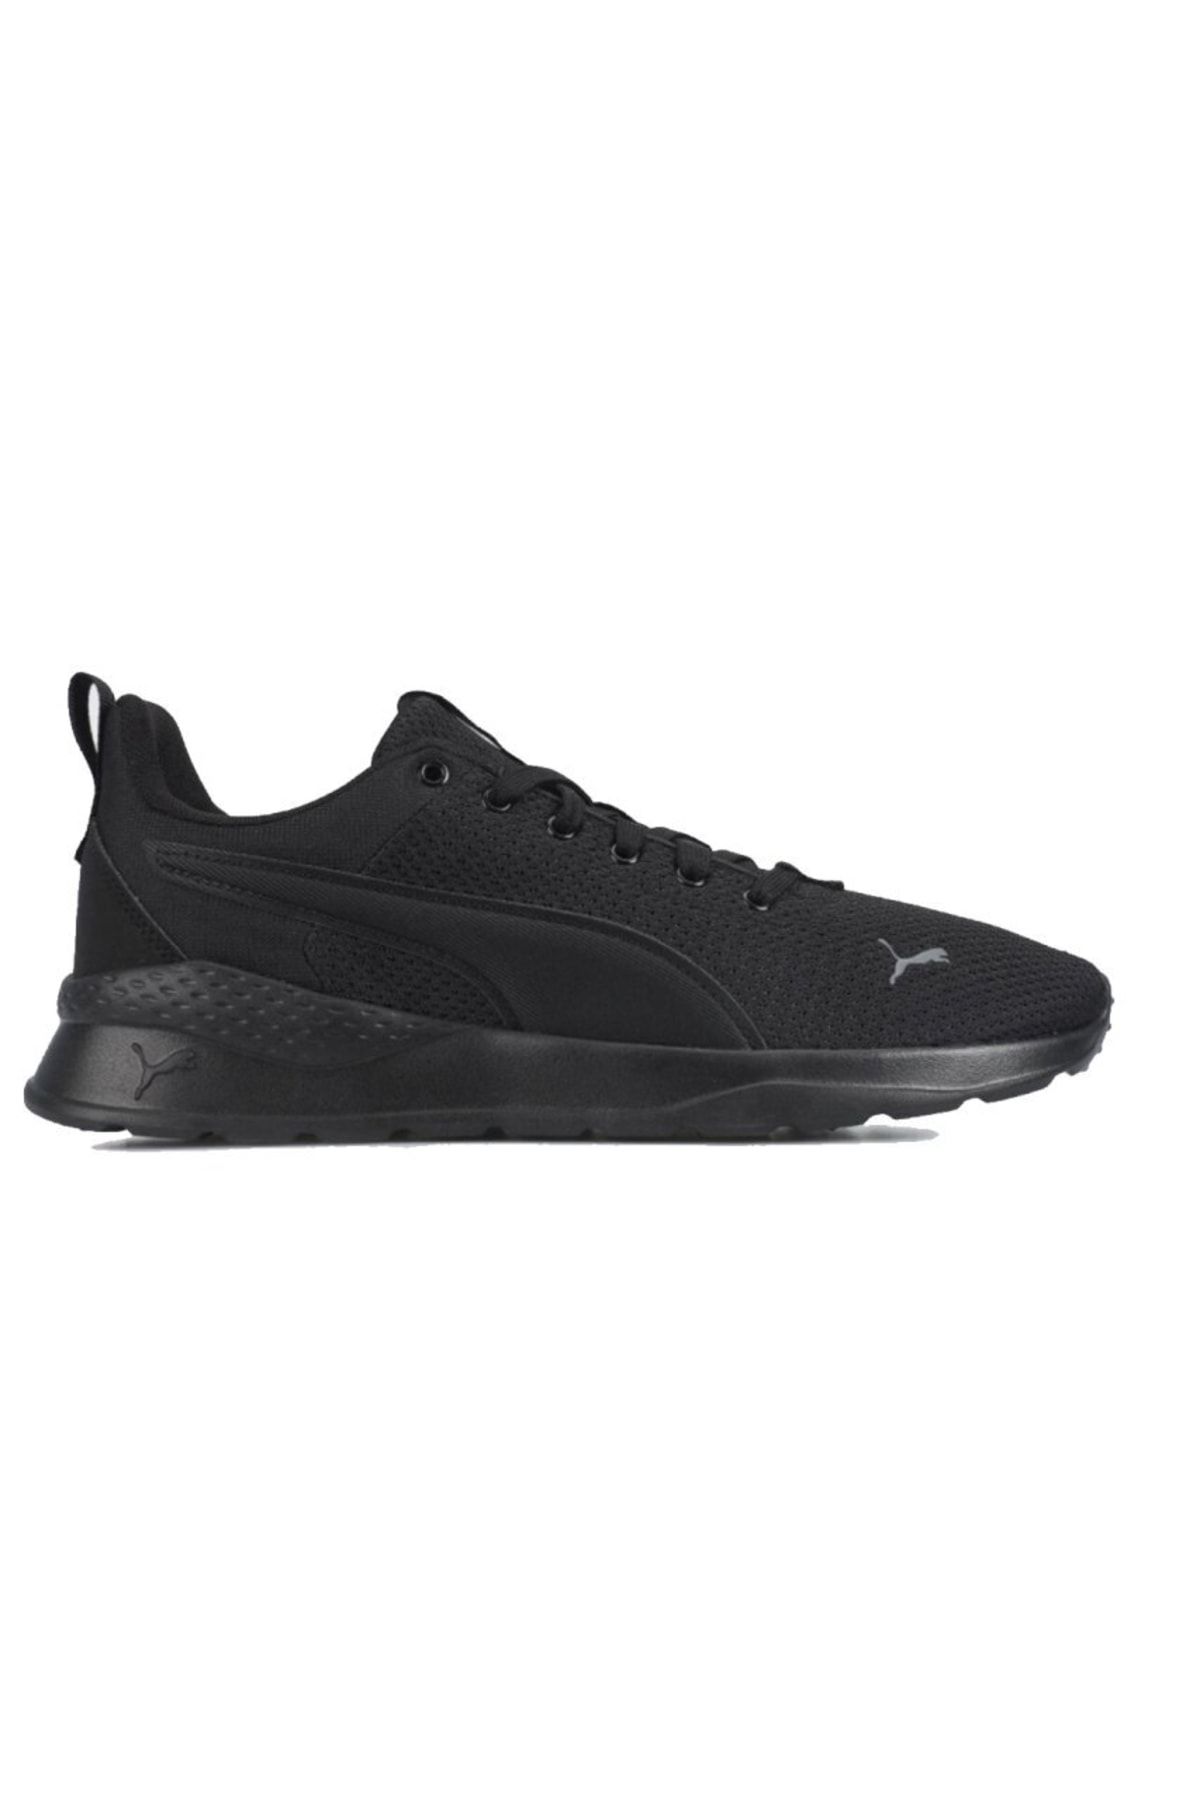 Puma Anzarun Lite Erkek Siyah Sneaker Ayakkabı 37112801